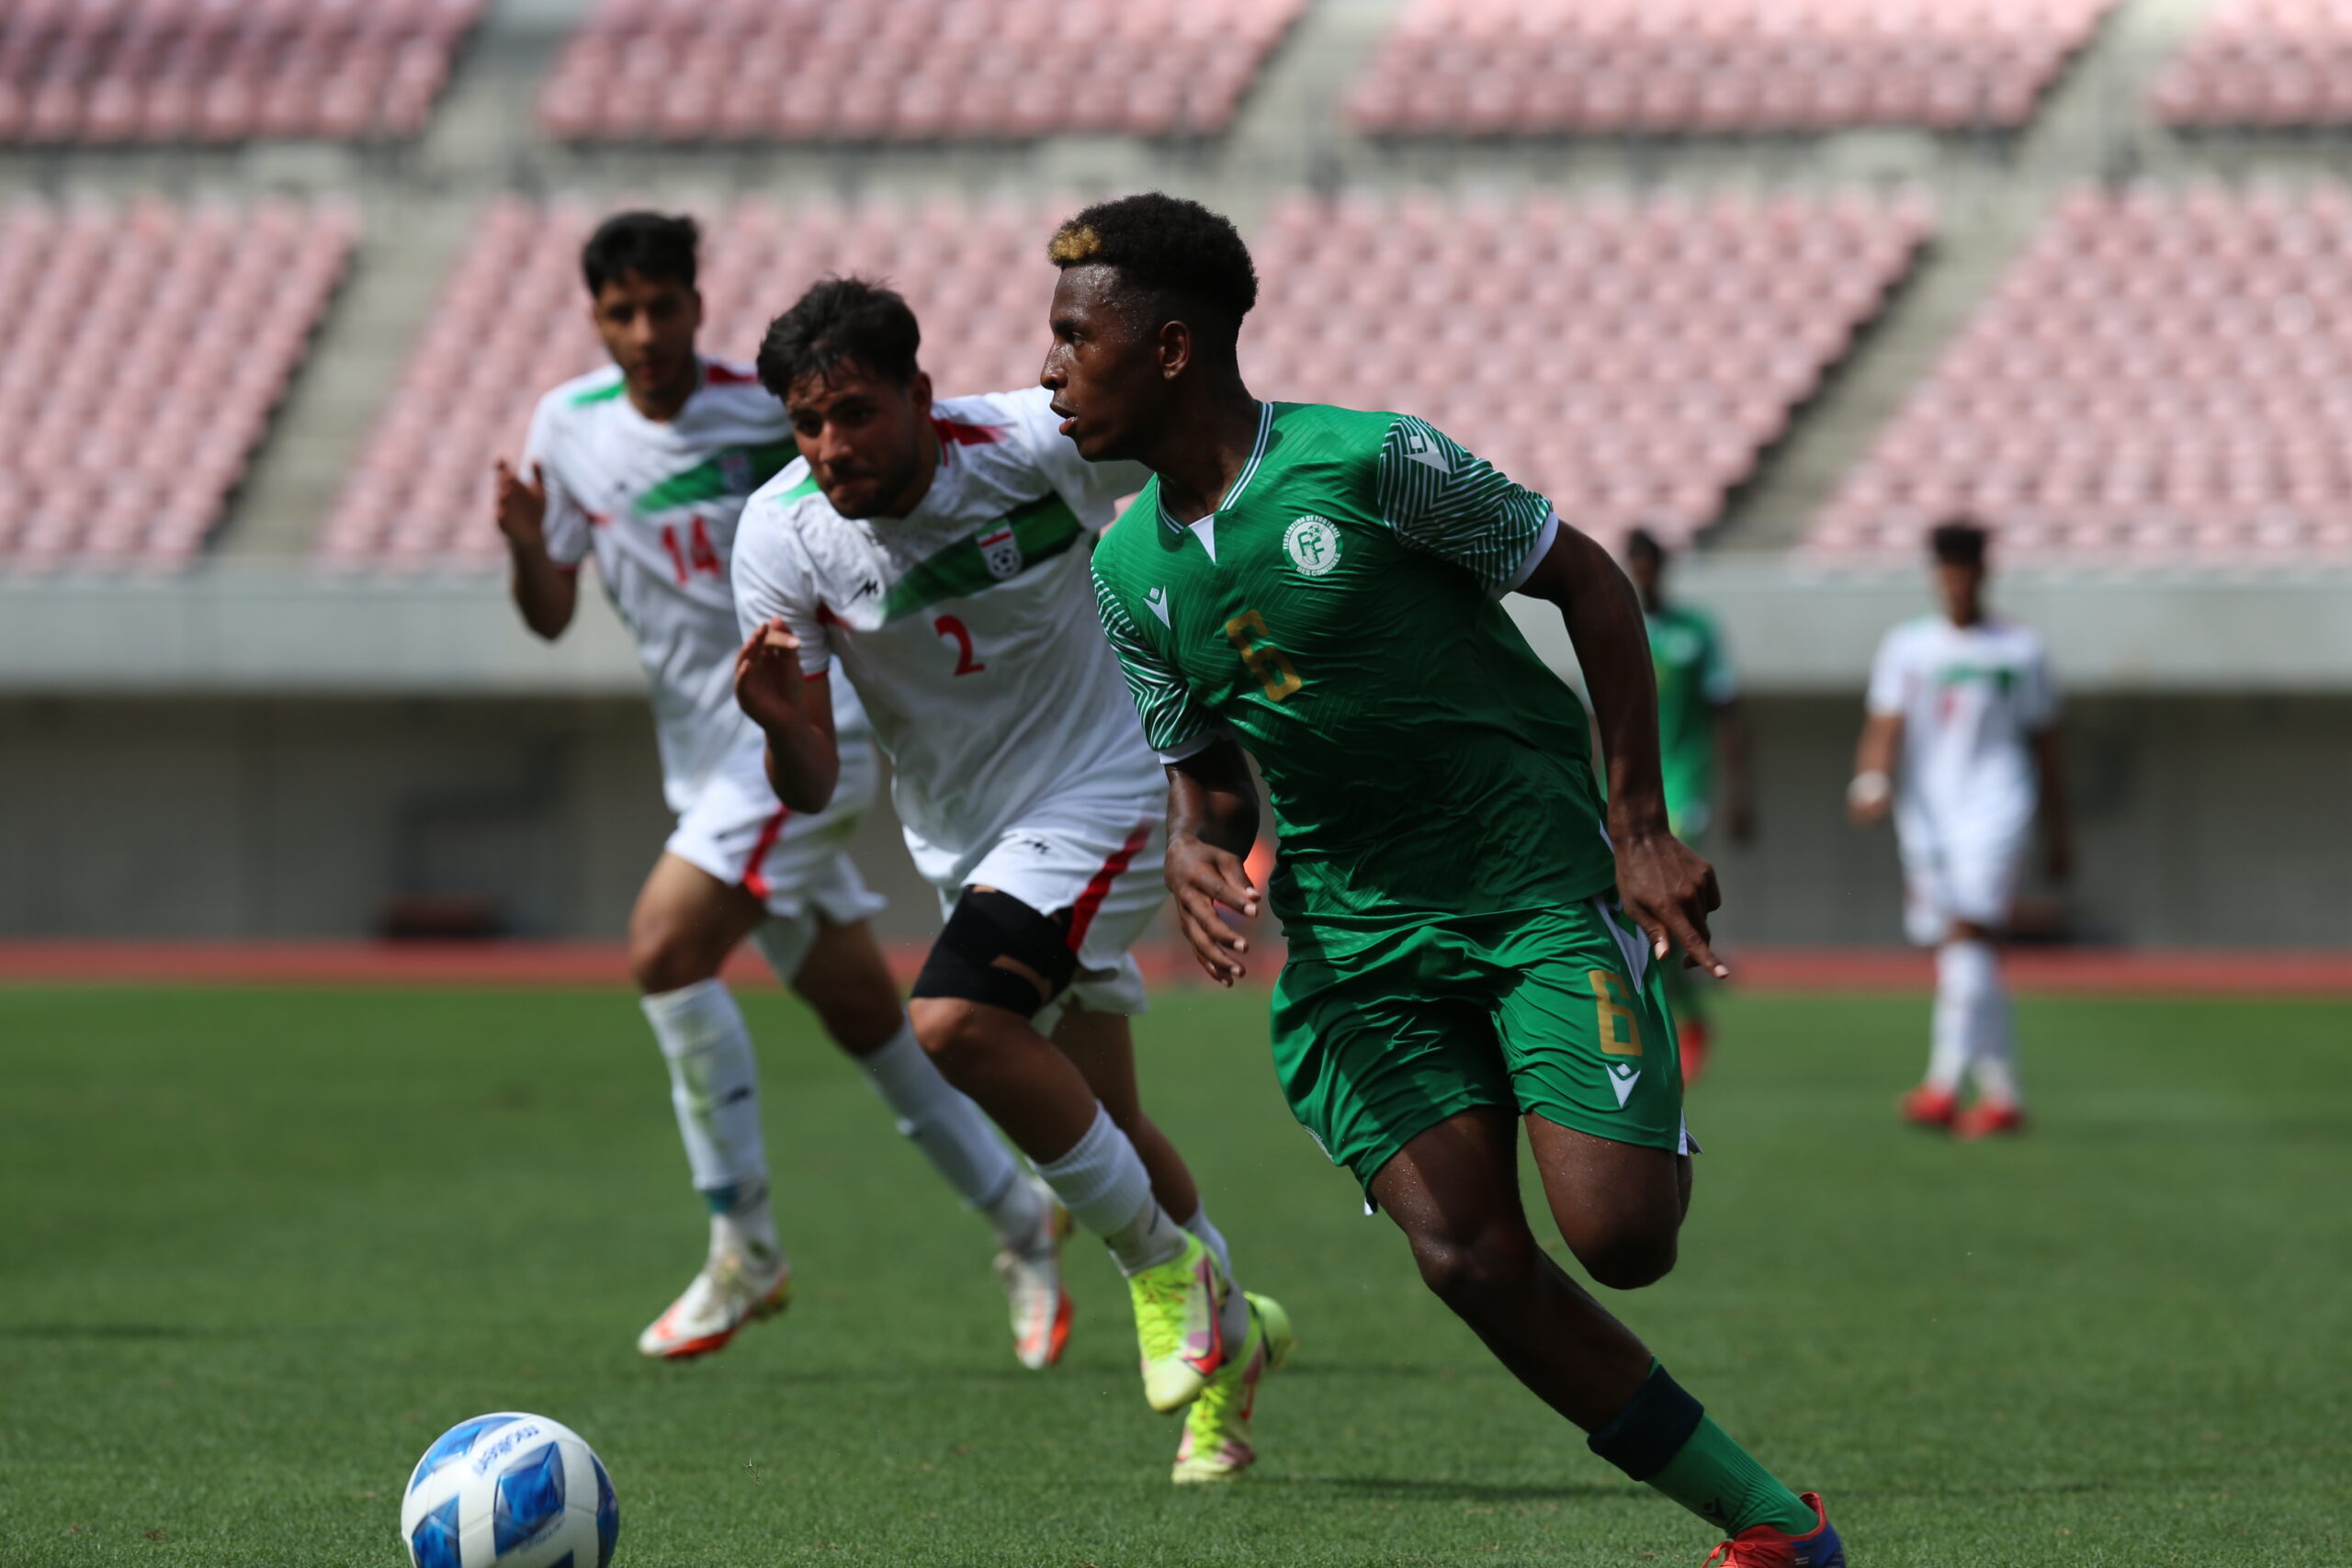 L'équipe U17 des Comores est invitée dans un tournoi en Algérie